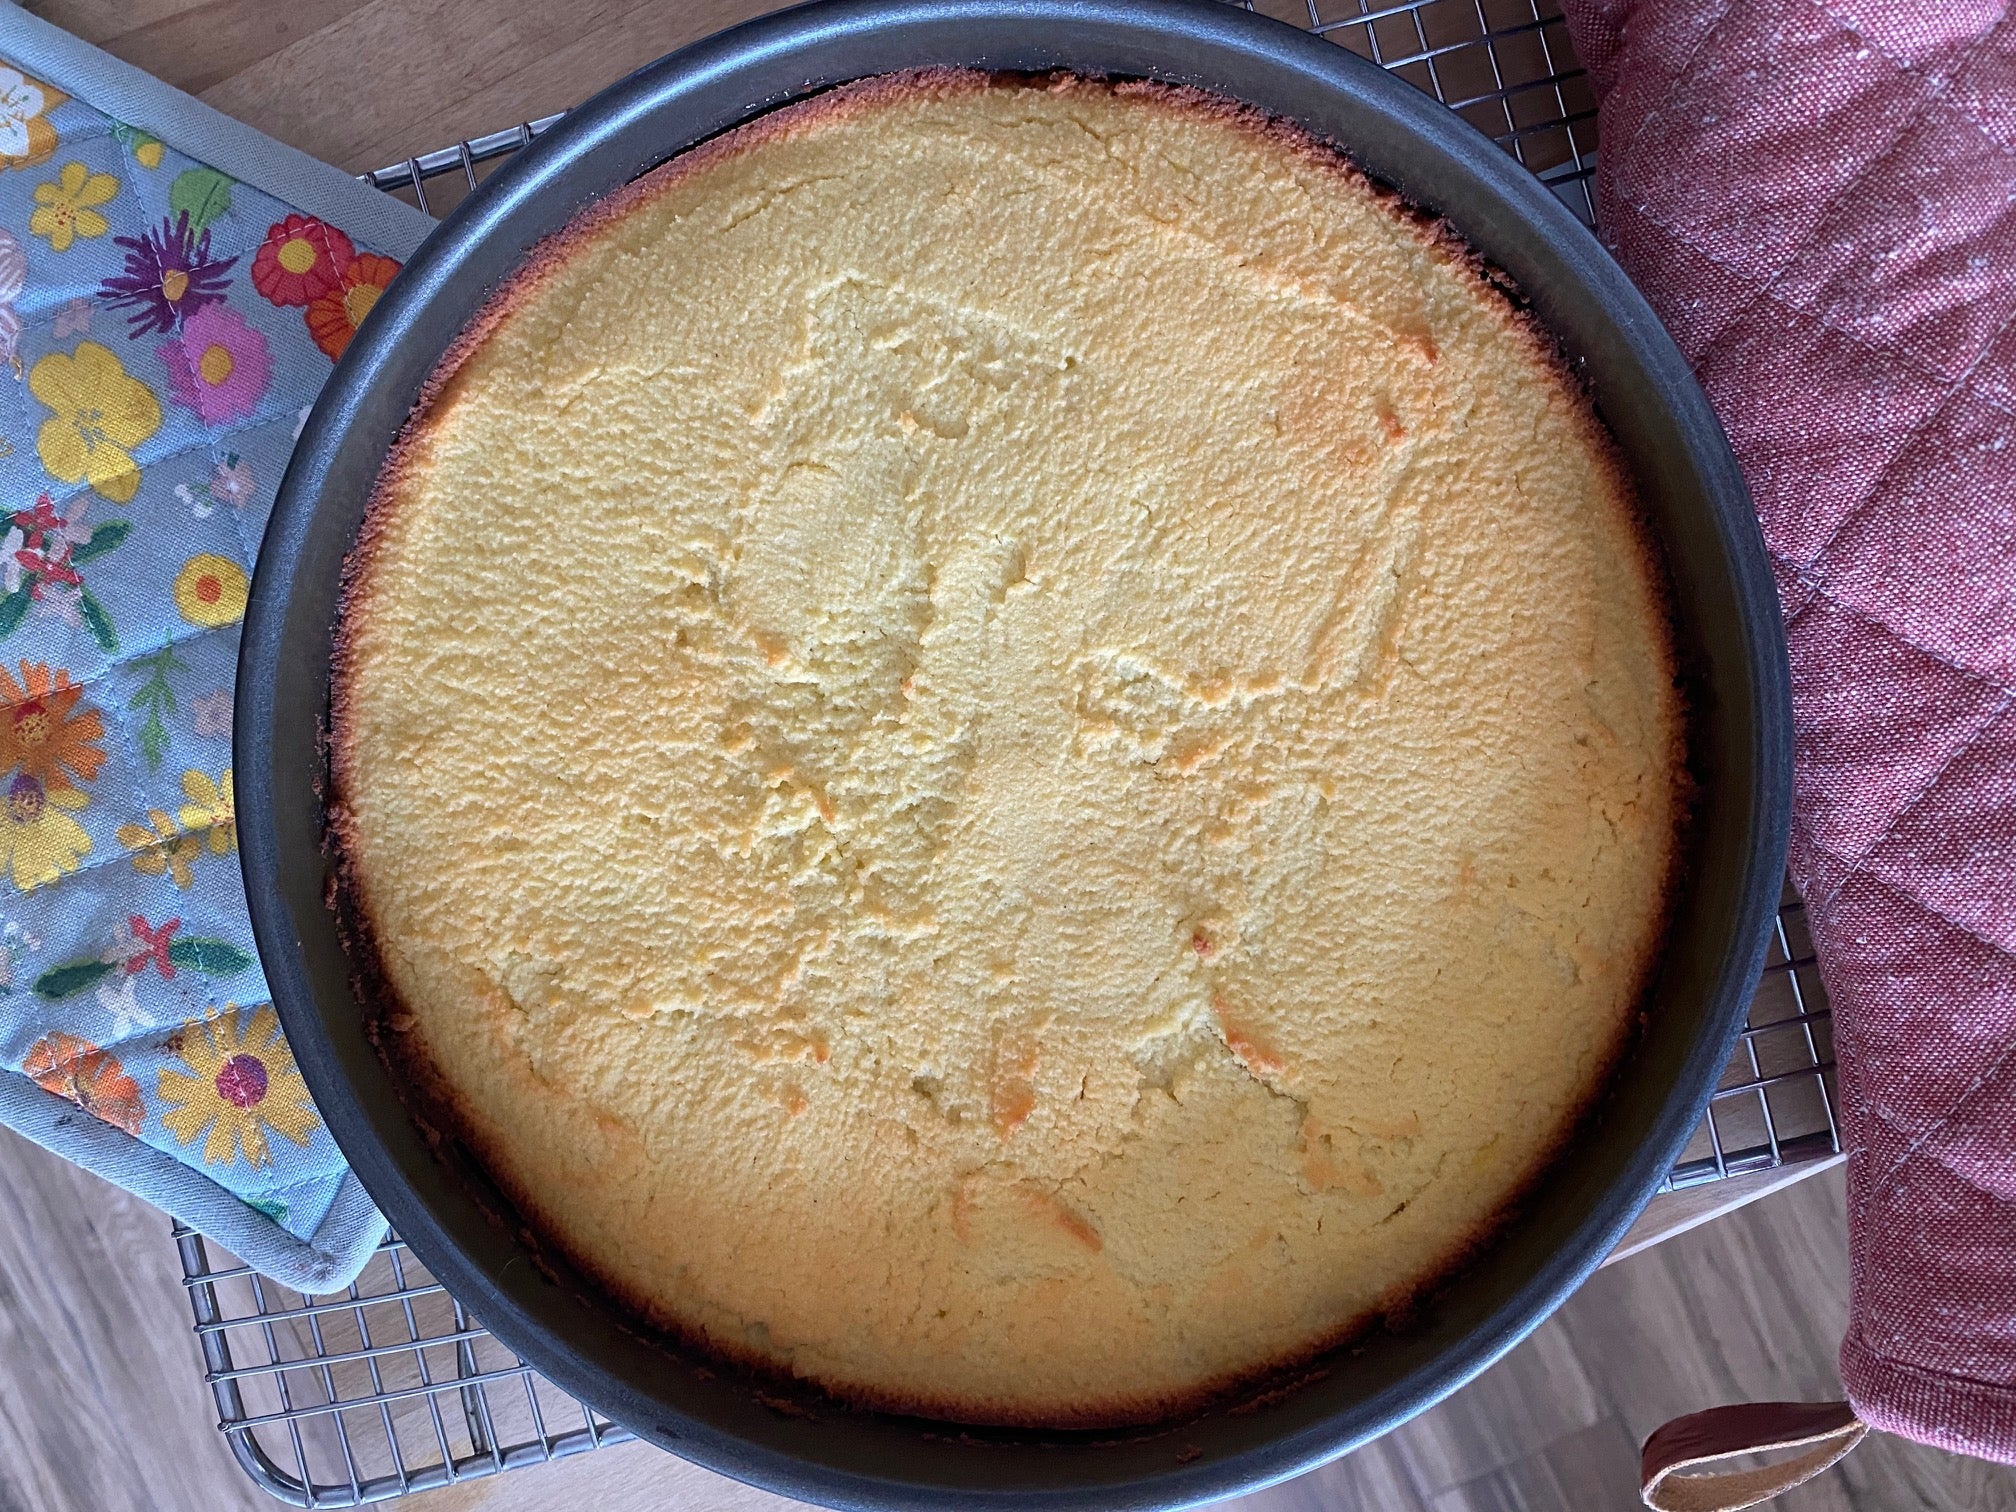 Cake after baking. (Photo: Allie Chanthorn Reinmann)